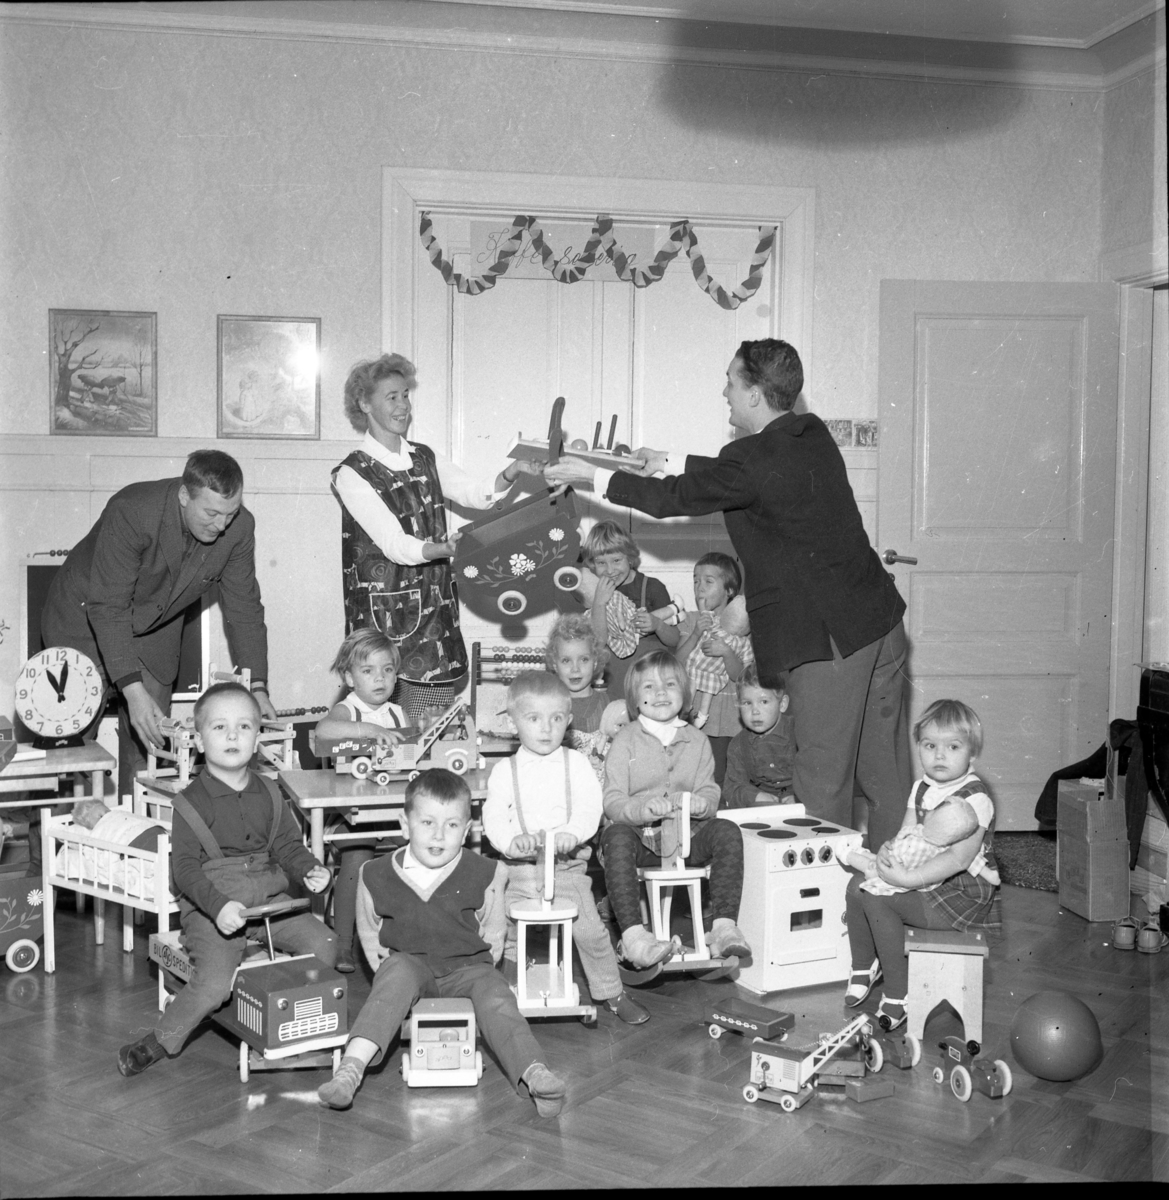 Troligen interiör från förskola etc. Flickor och pojkar sitter bland gunghästar och andra leksaker. Flickan i bakgruden som biter på en dockas hand är möjligen Pia Jansson. Männen i bakgrunden är från vänster Lennart Berglund och Hans Roman.